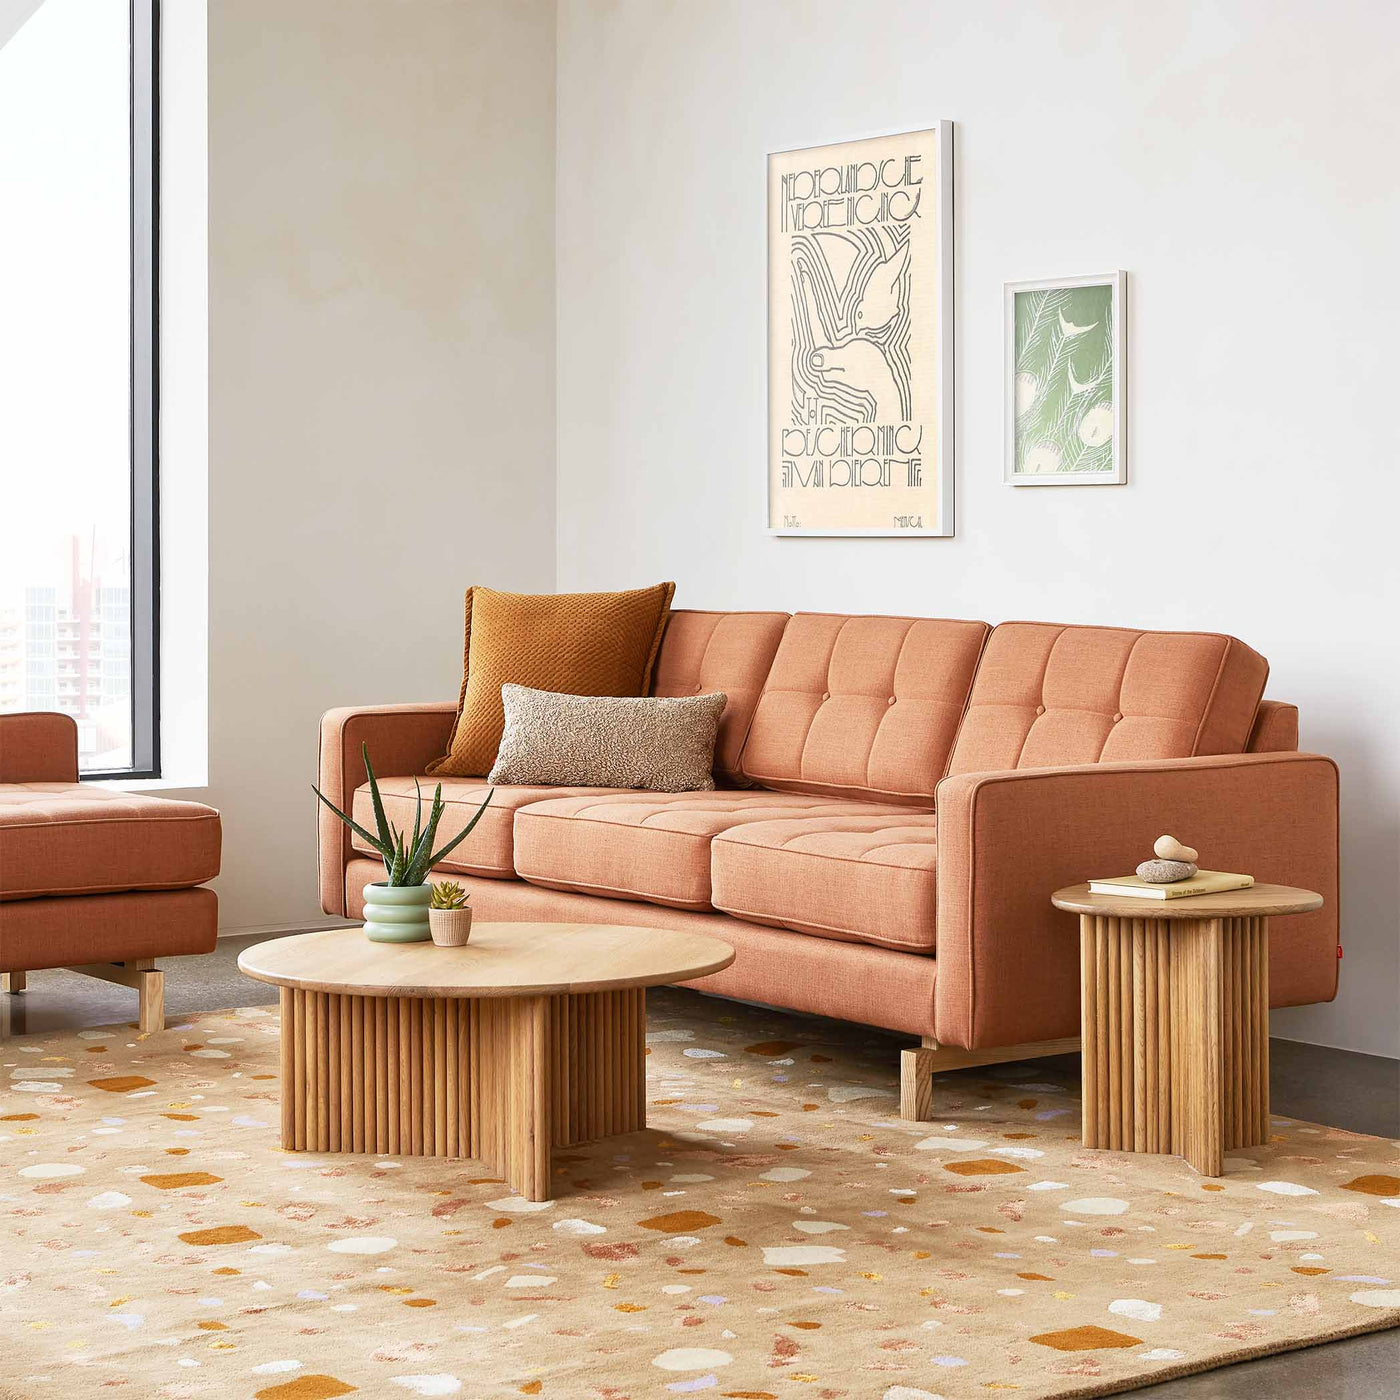 Découvrez le sofa Jane 2 de Gus* Modern : une interprétation moderne du style Mid-century, configurable avec le Lounge pour s'adapter à votre espace